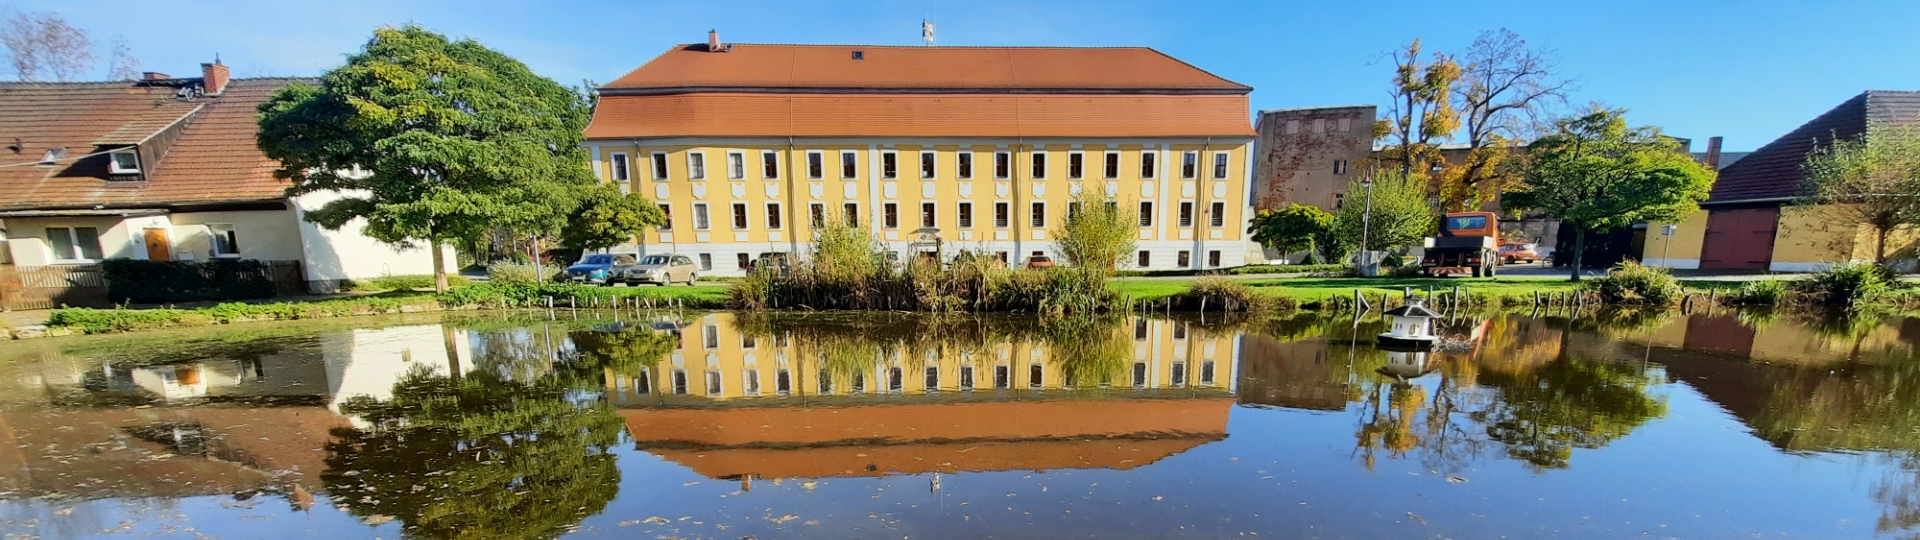 Herrenhaus des Rittergutes in Treben